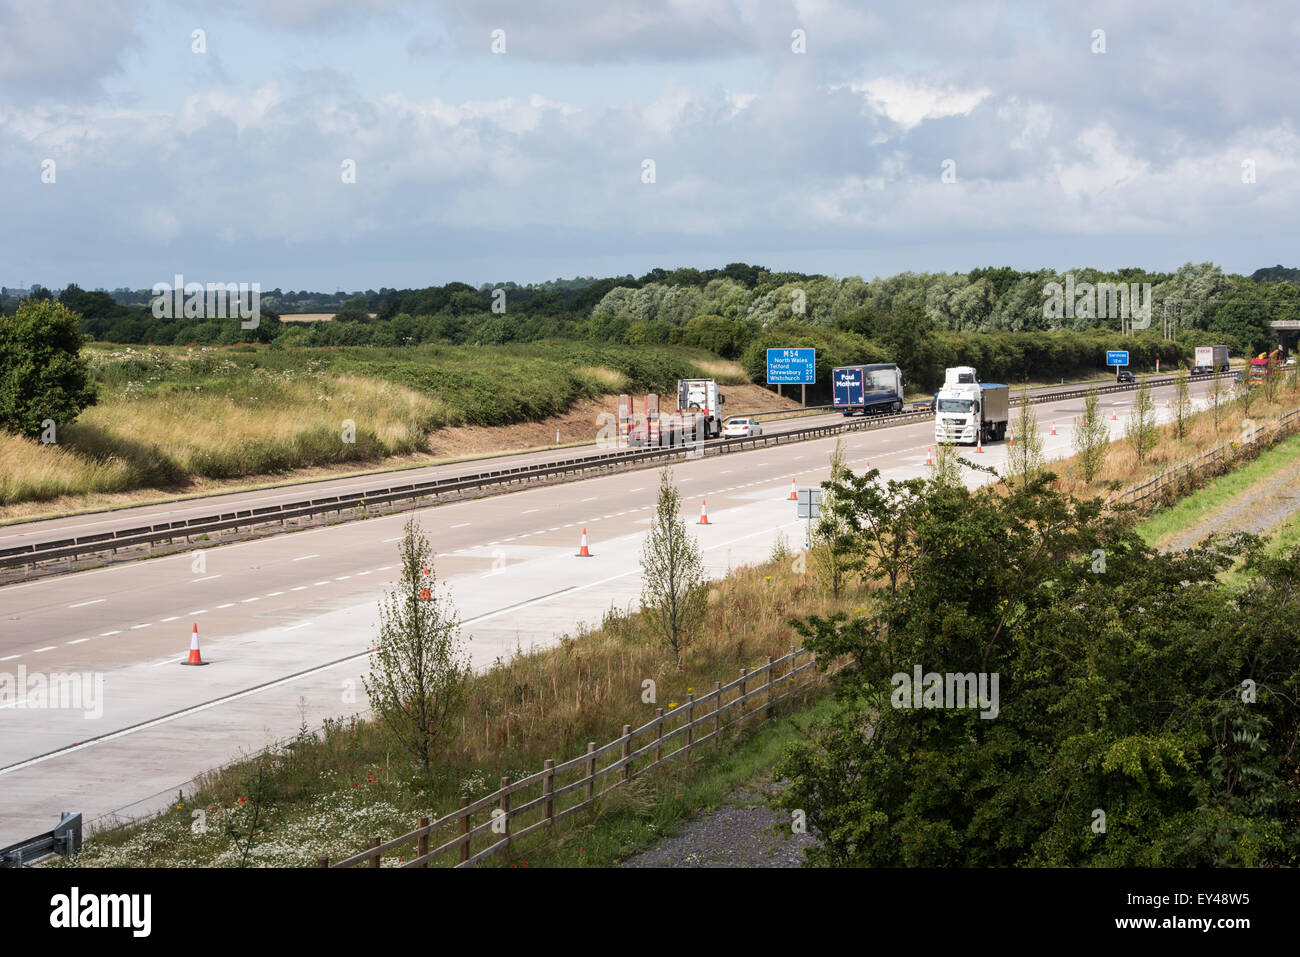 M54 motorway running through shropshire 20th july 2015 uk Stock Photo